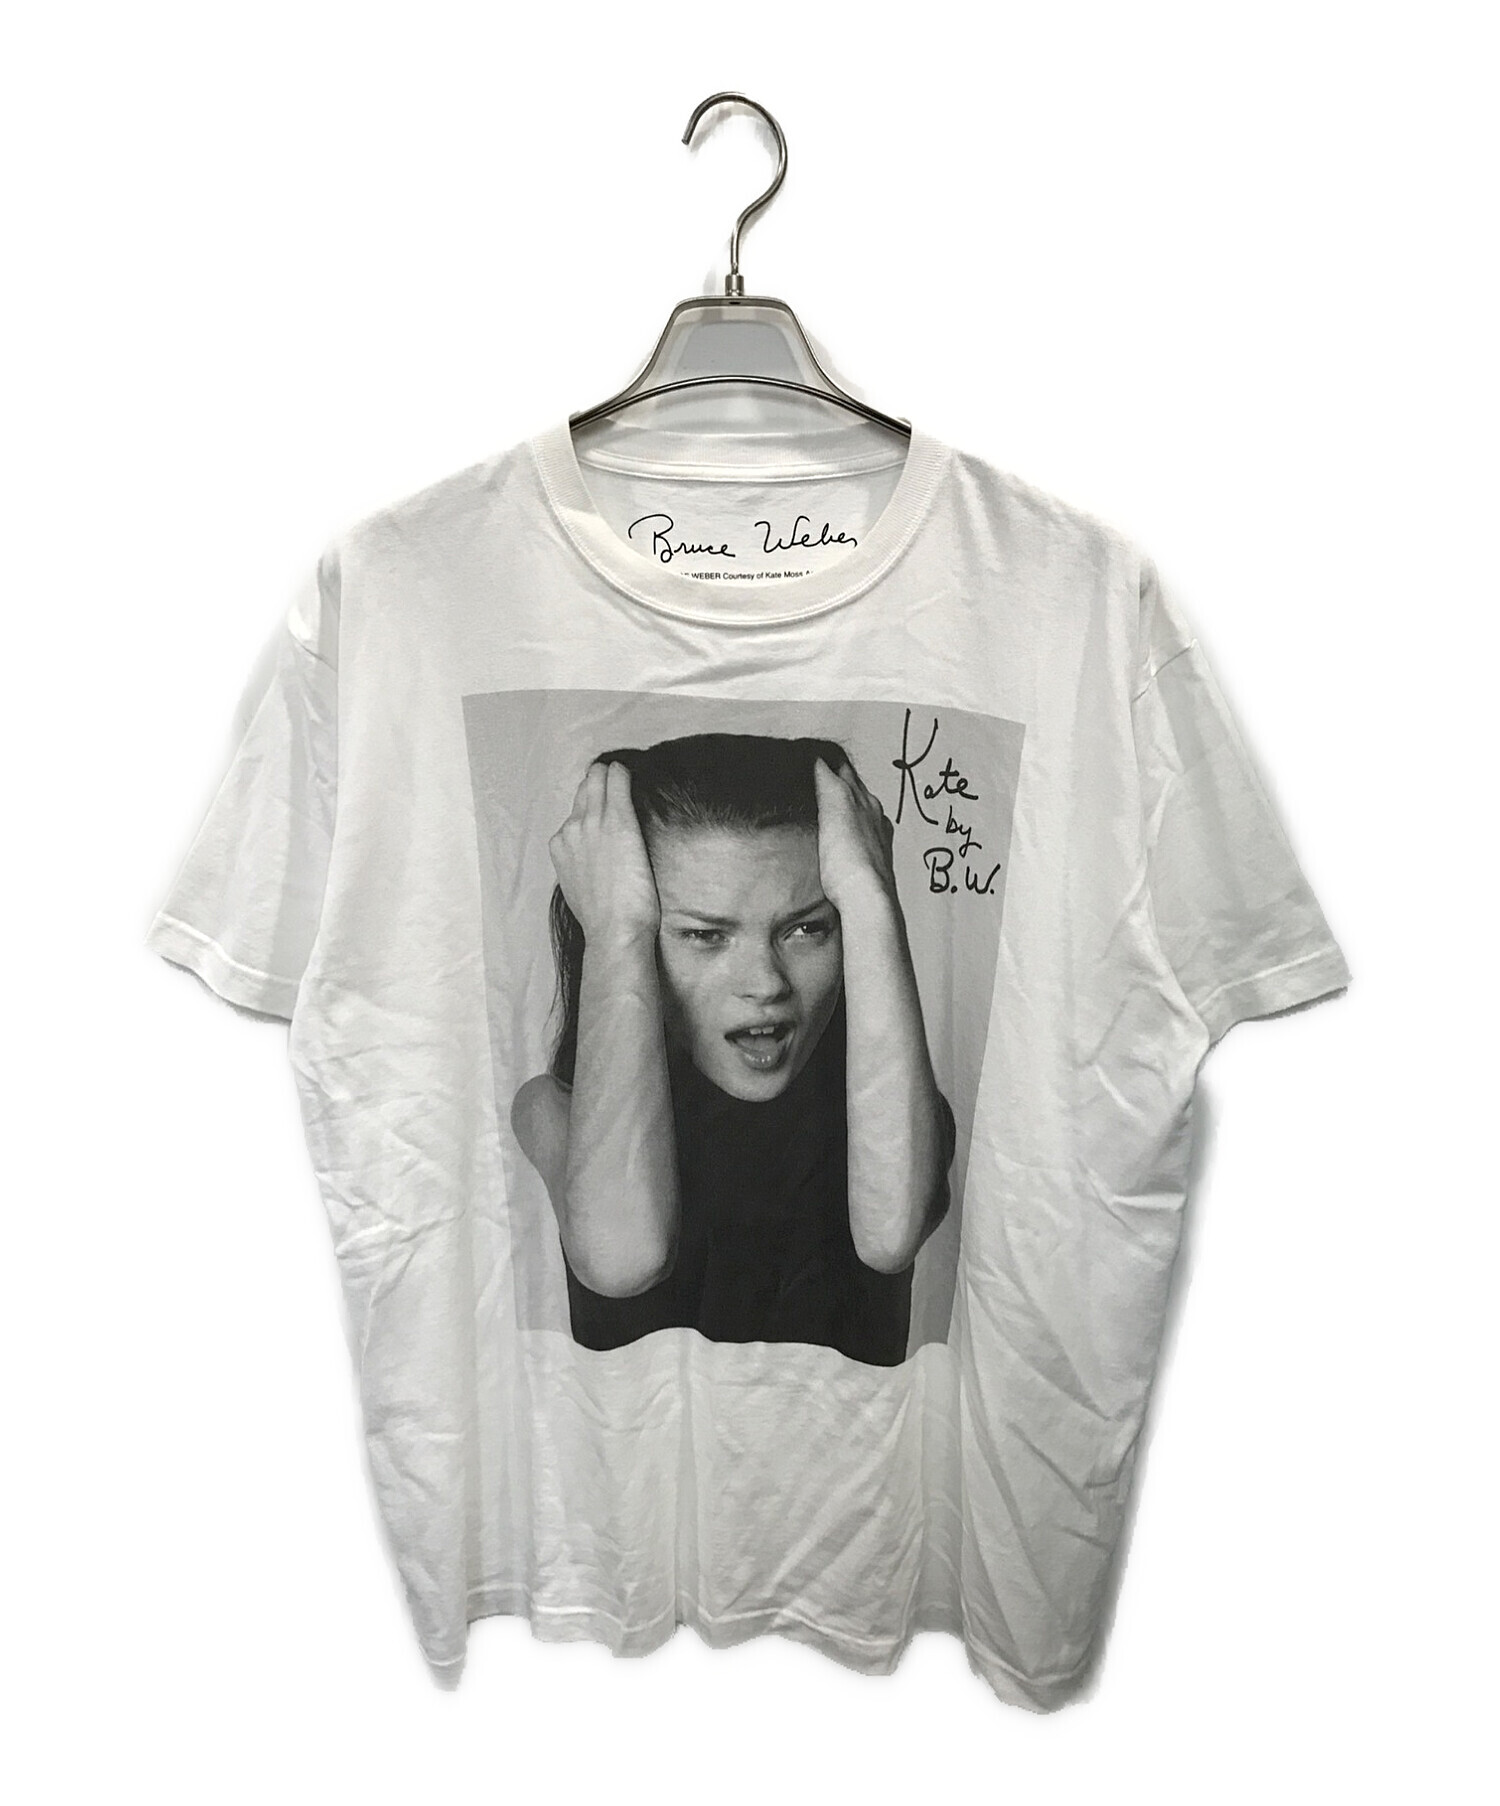 BRUCE WEBER (ブルース・ウェバー) BIOTOP (ビオトープ) 10C (テンシー) 10周年記念Photo T-Shirts ホワイト  サイズ:XL